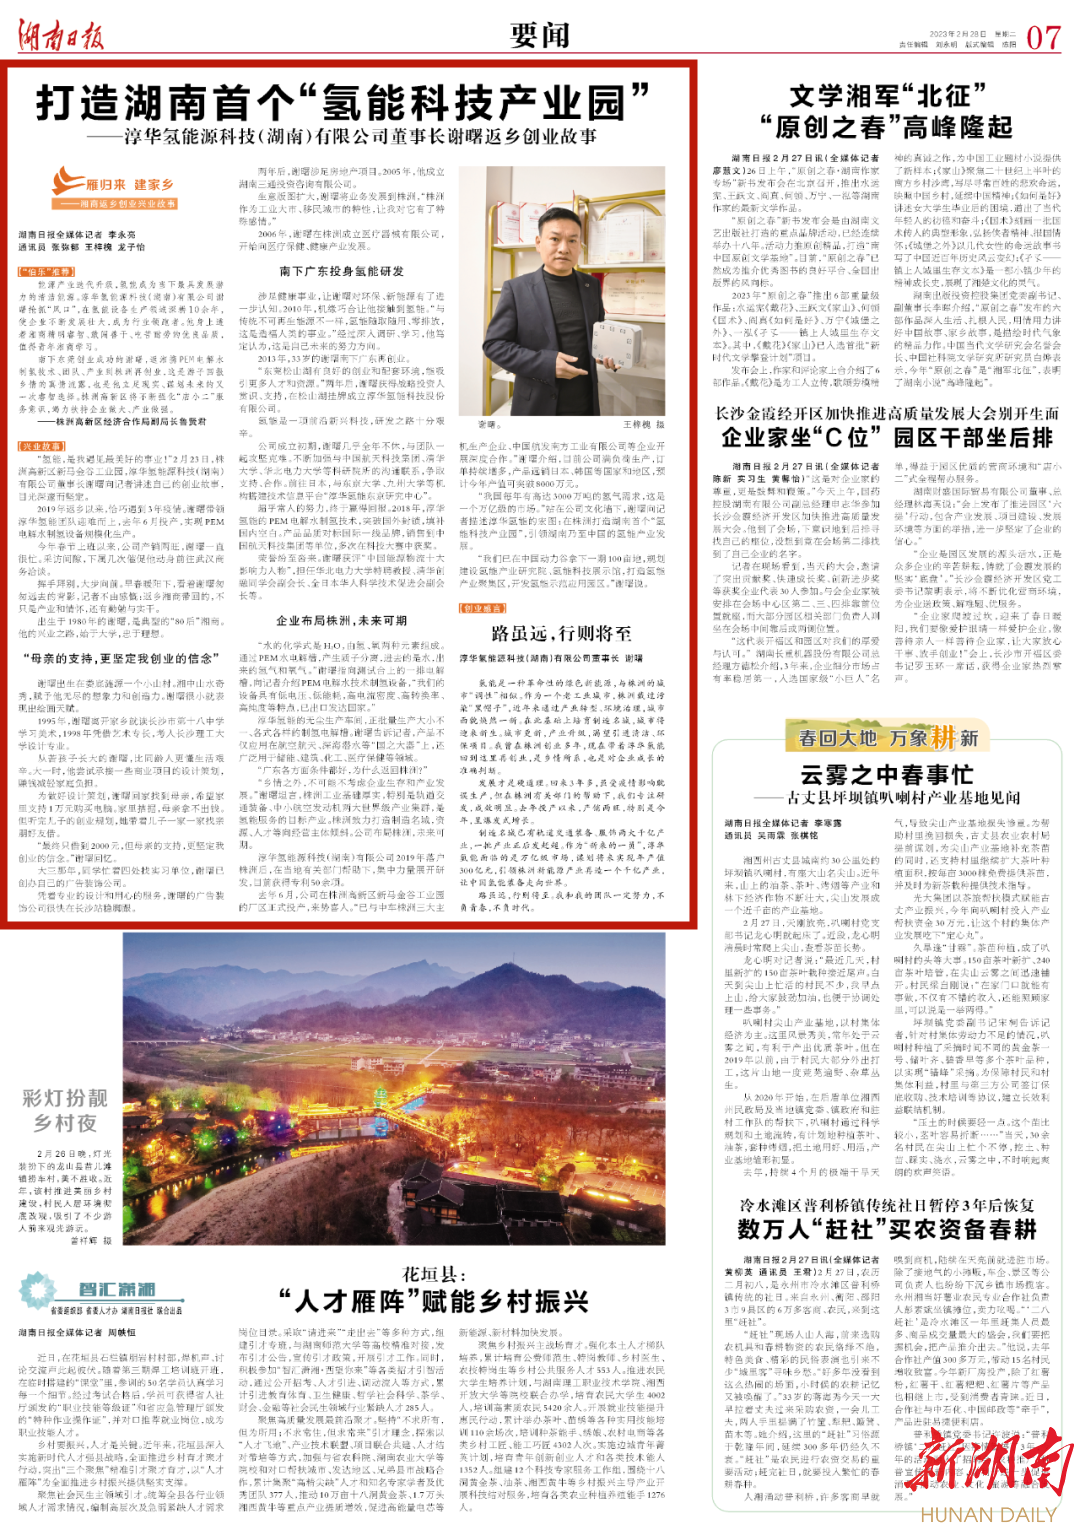 湖南日报丨“雁归来 建家乡” 打造湖南首个“氢能科技产业园”